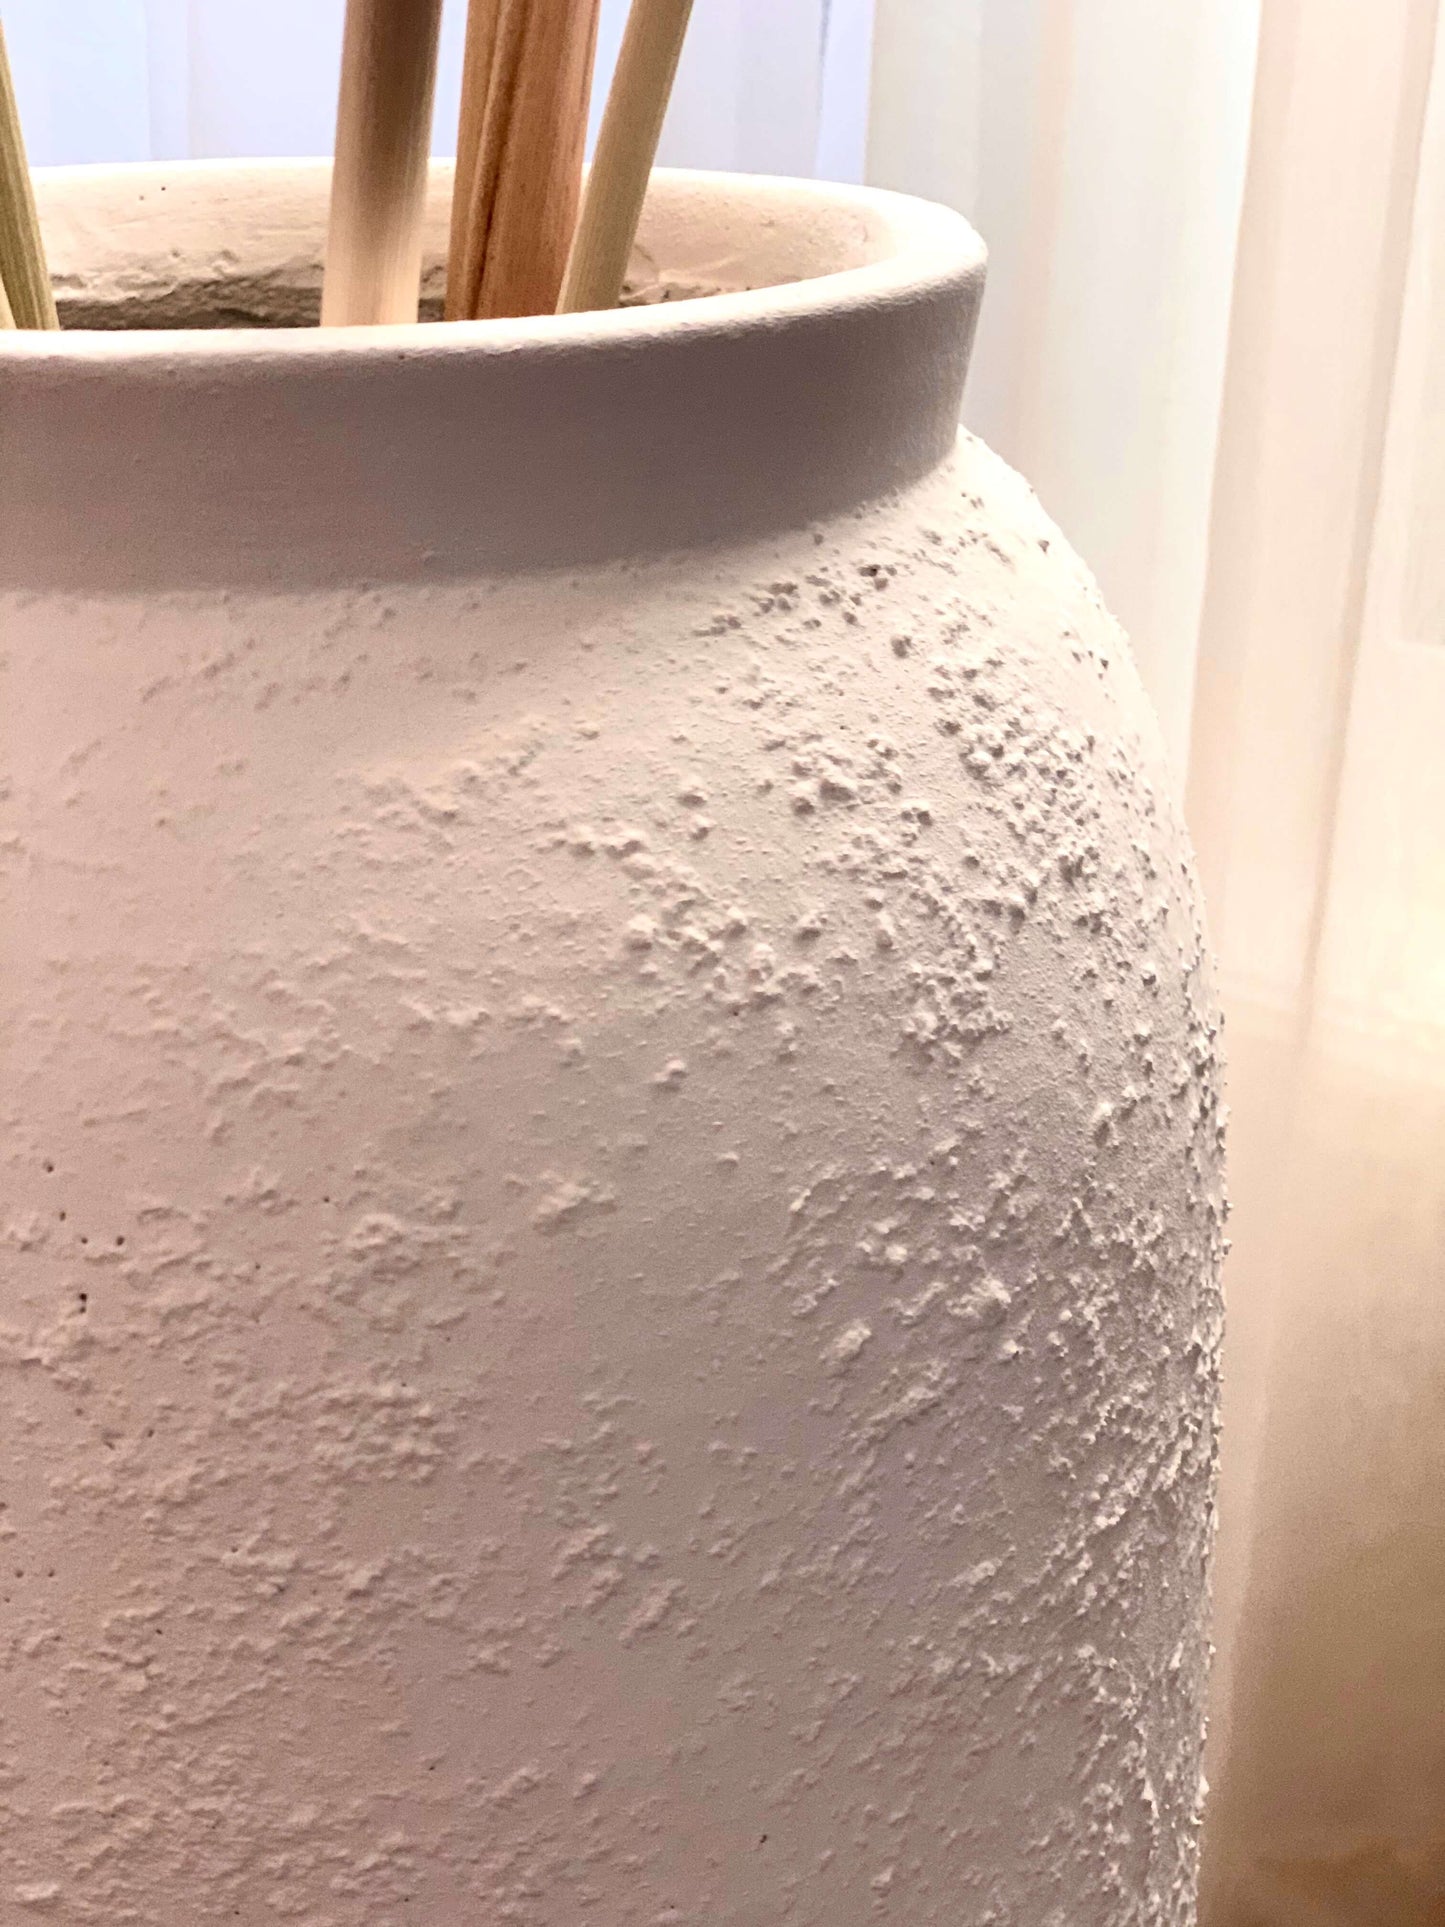 Oia White Clay Vase Pot